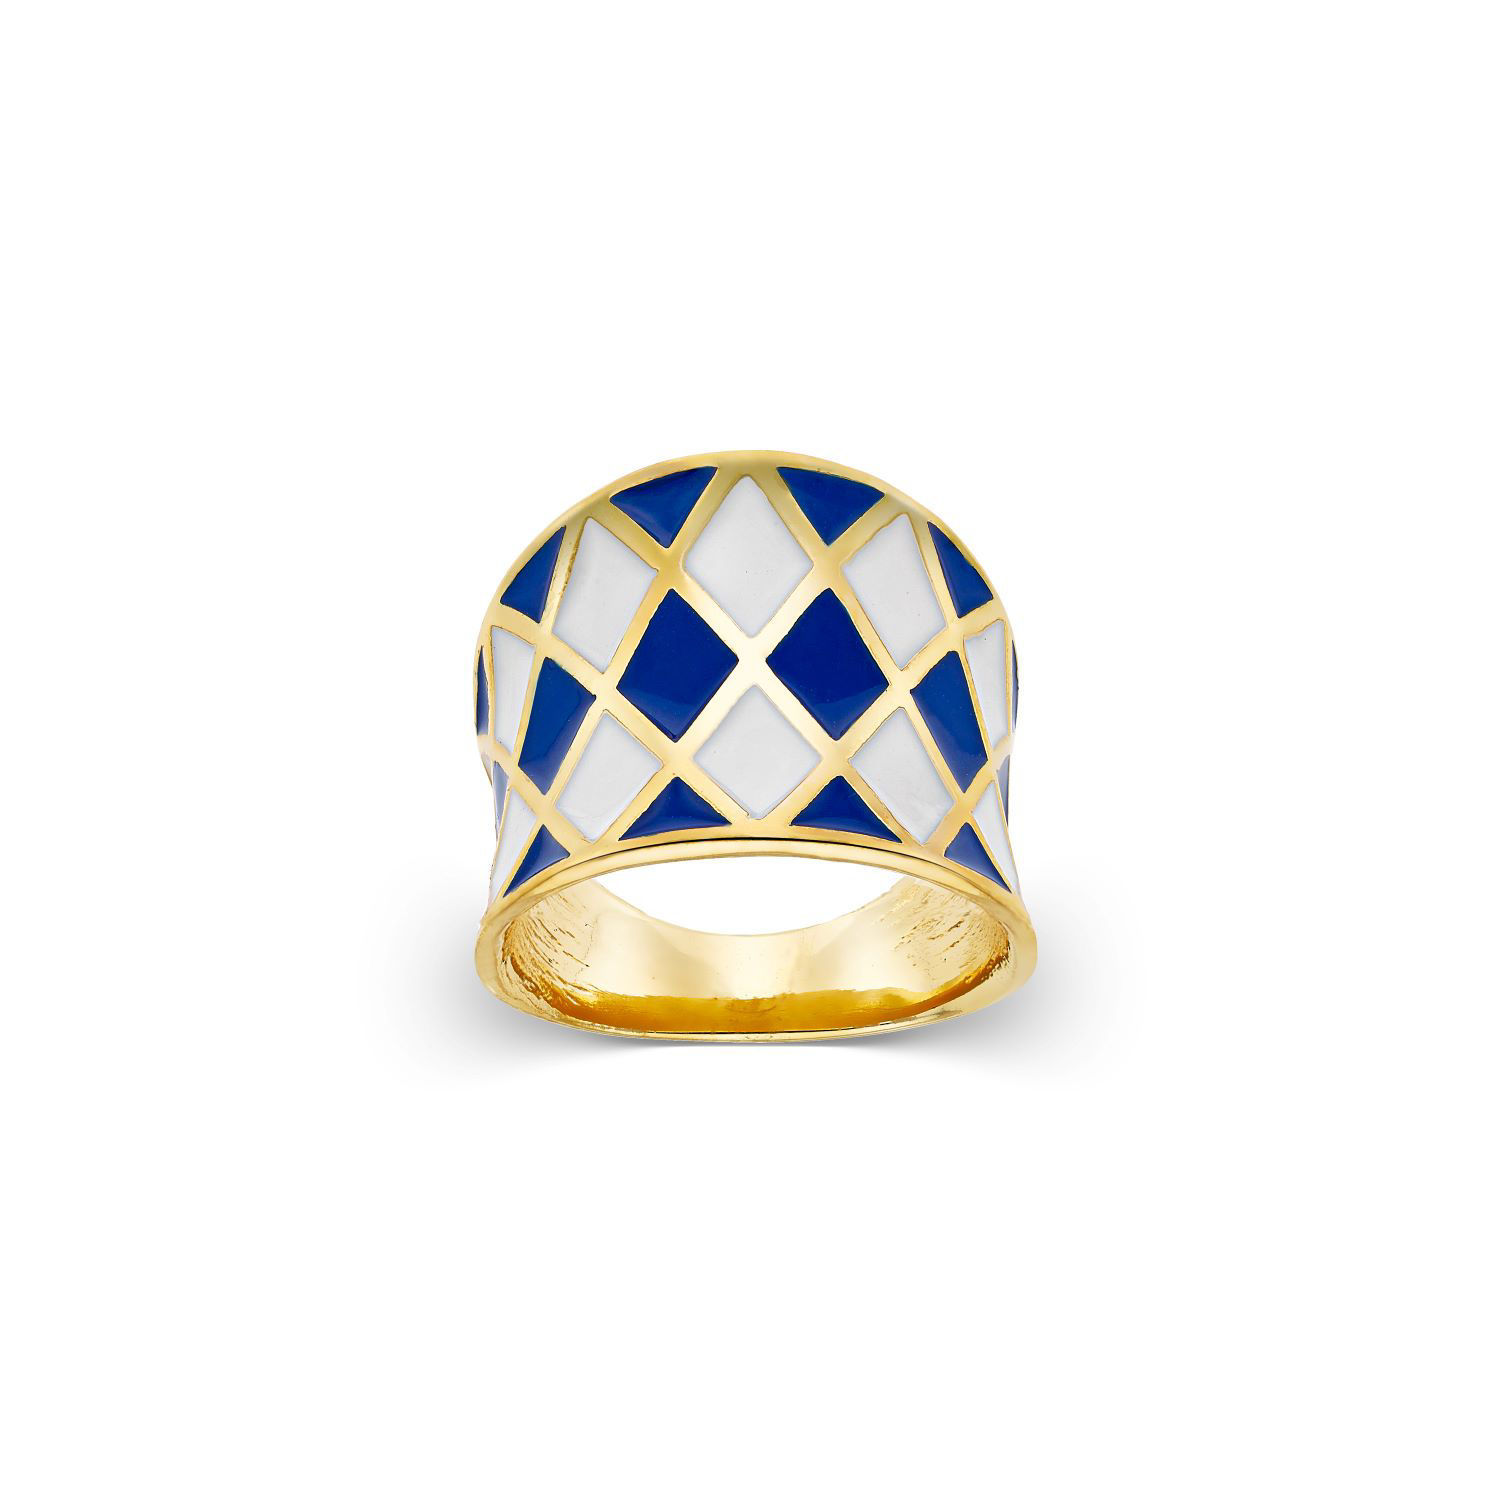 Δαχτυλίδι Pop 23 από επιχρυσωμένο ασήμι 925° με λευκό και μπλε σμάλτο